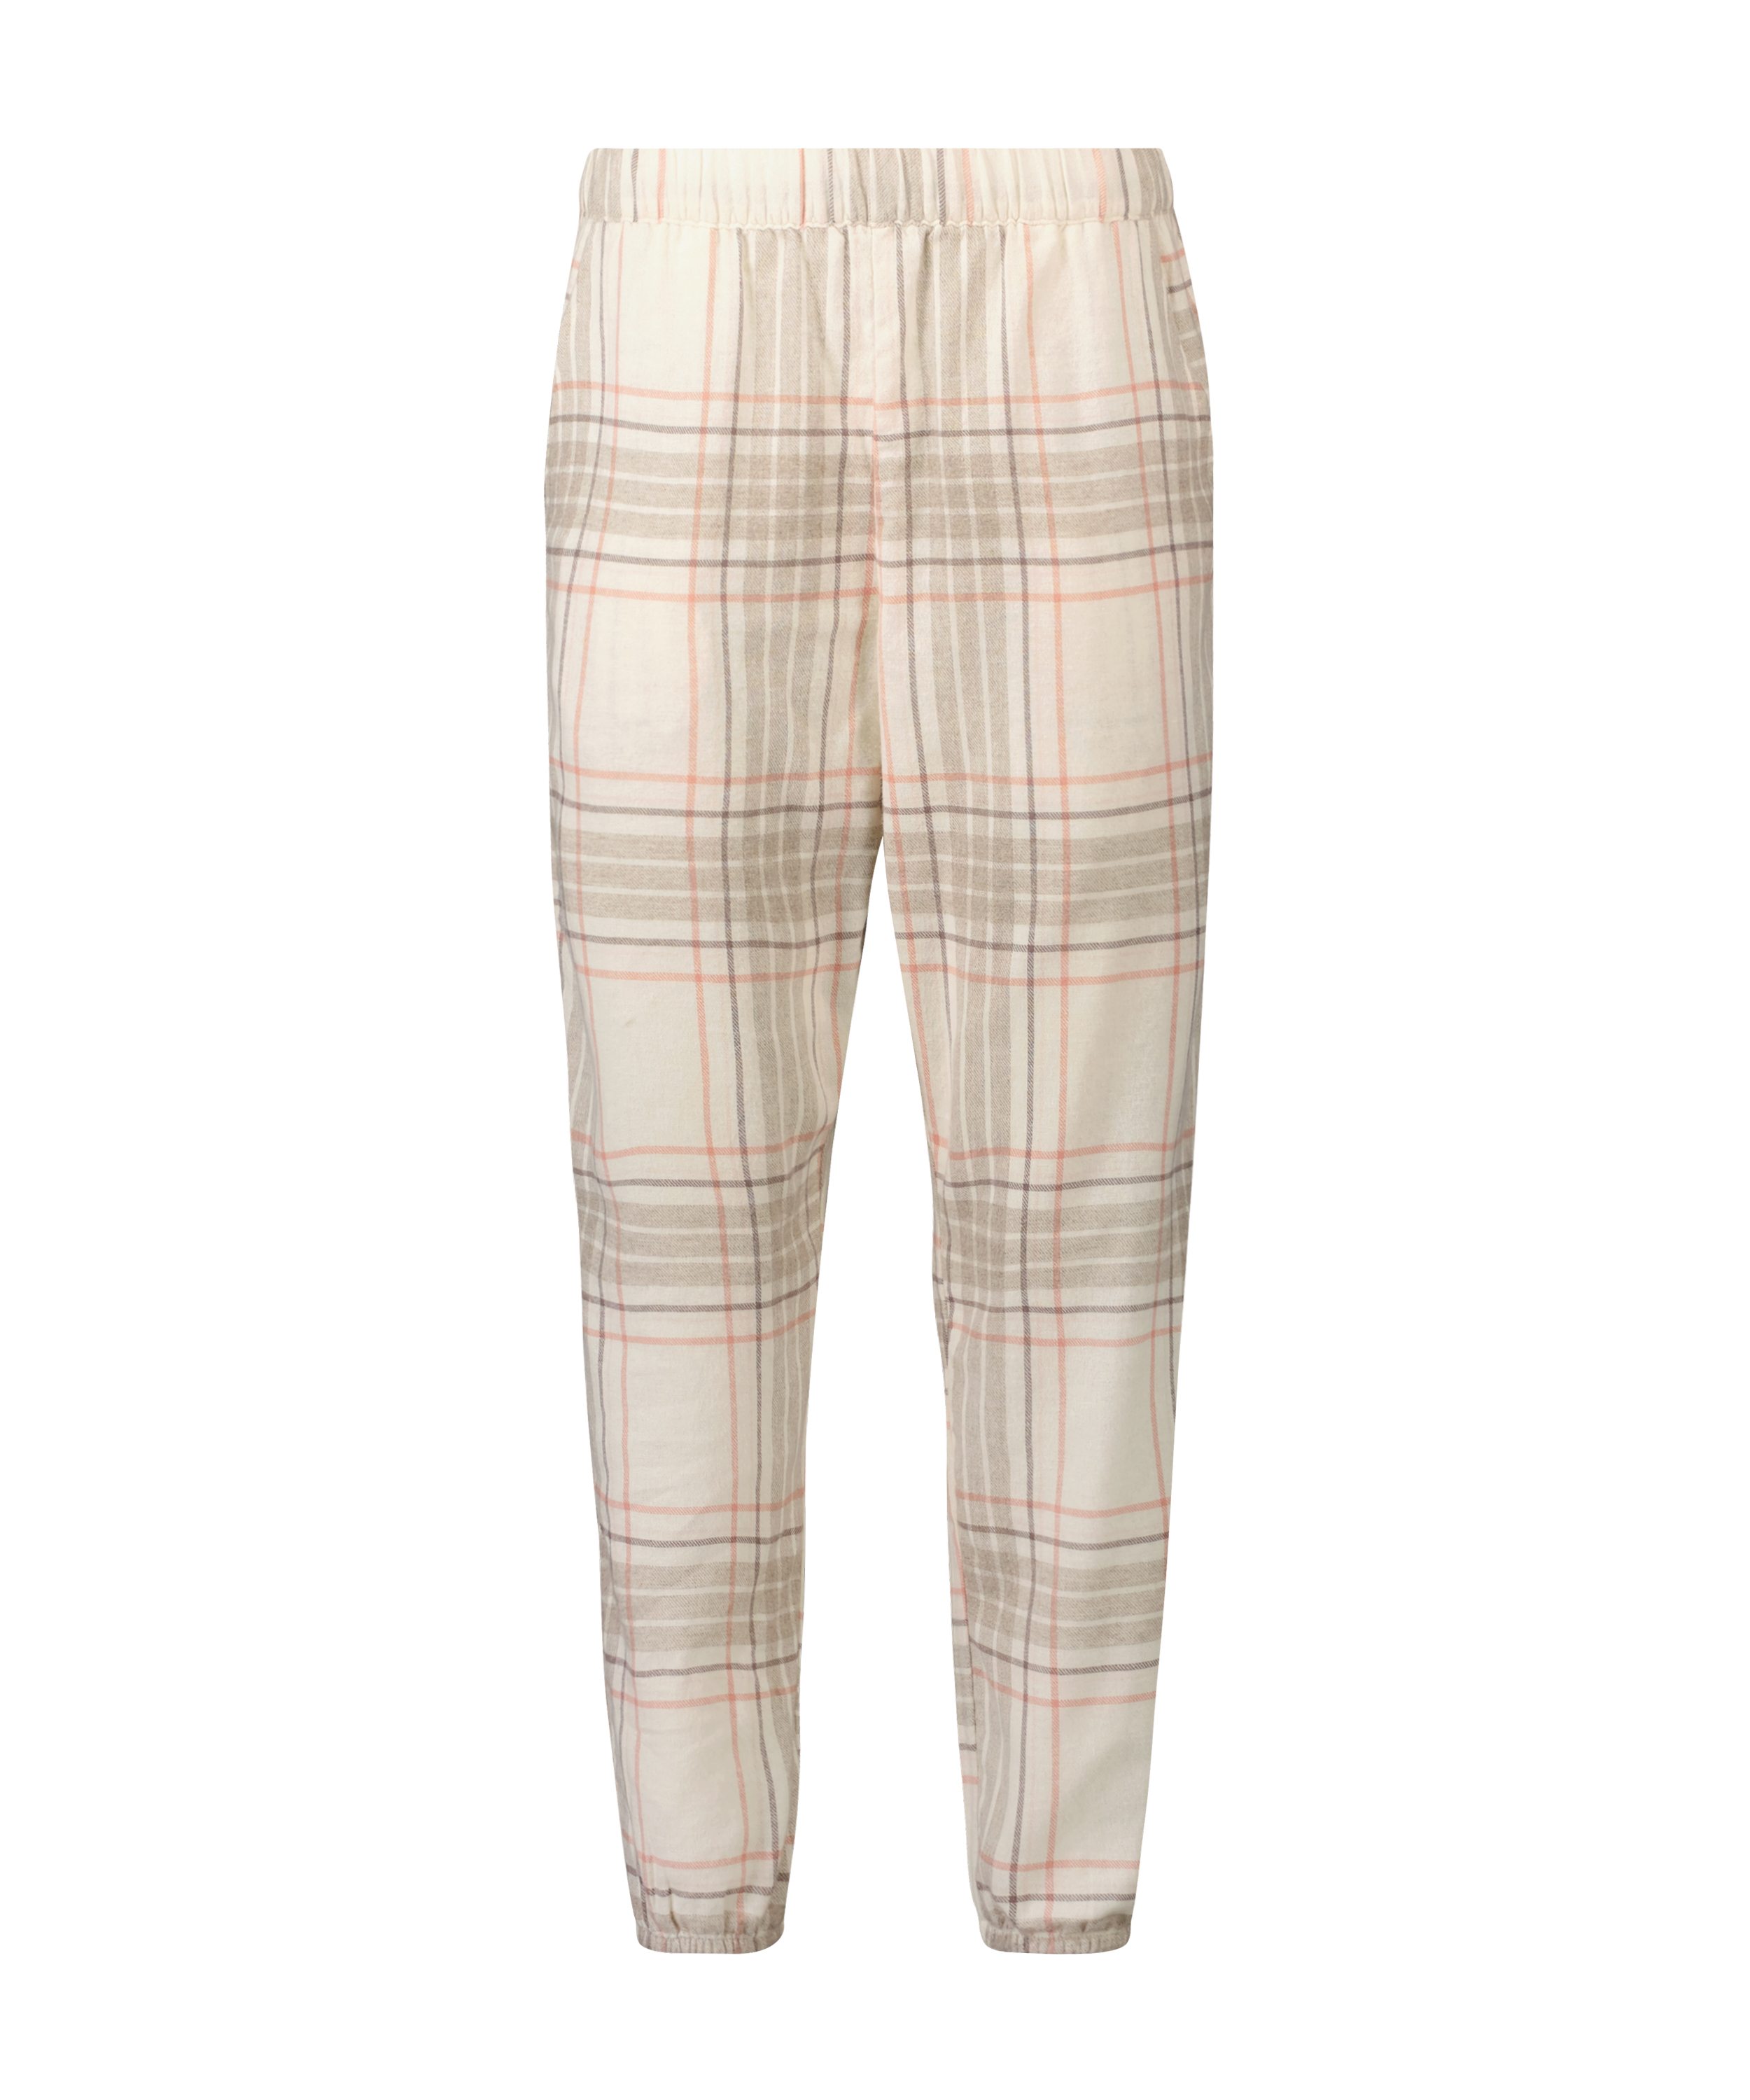 Pantalon de pyjama en sergé à carreaux court, Gris, main